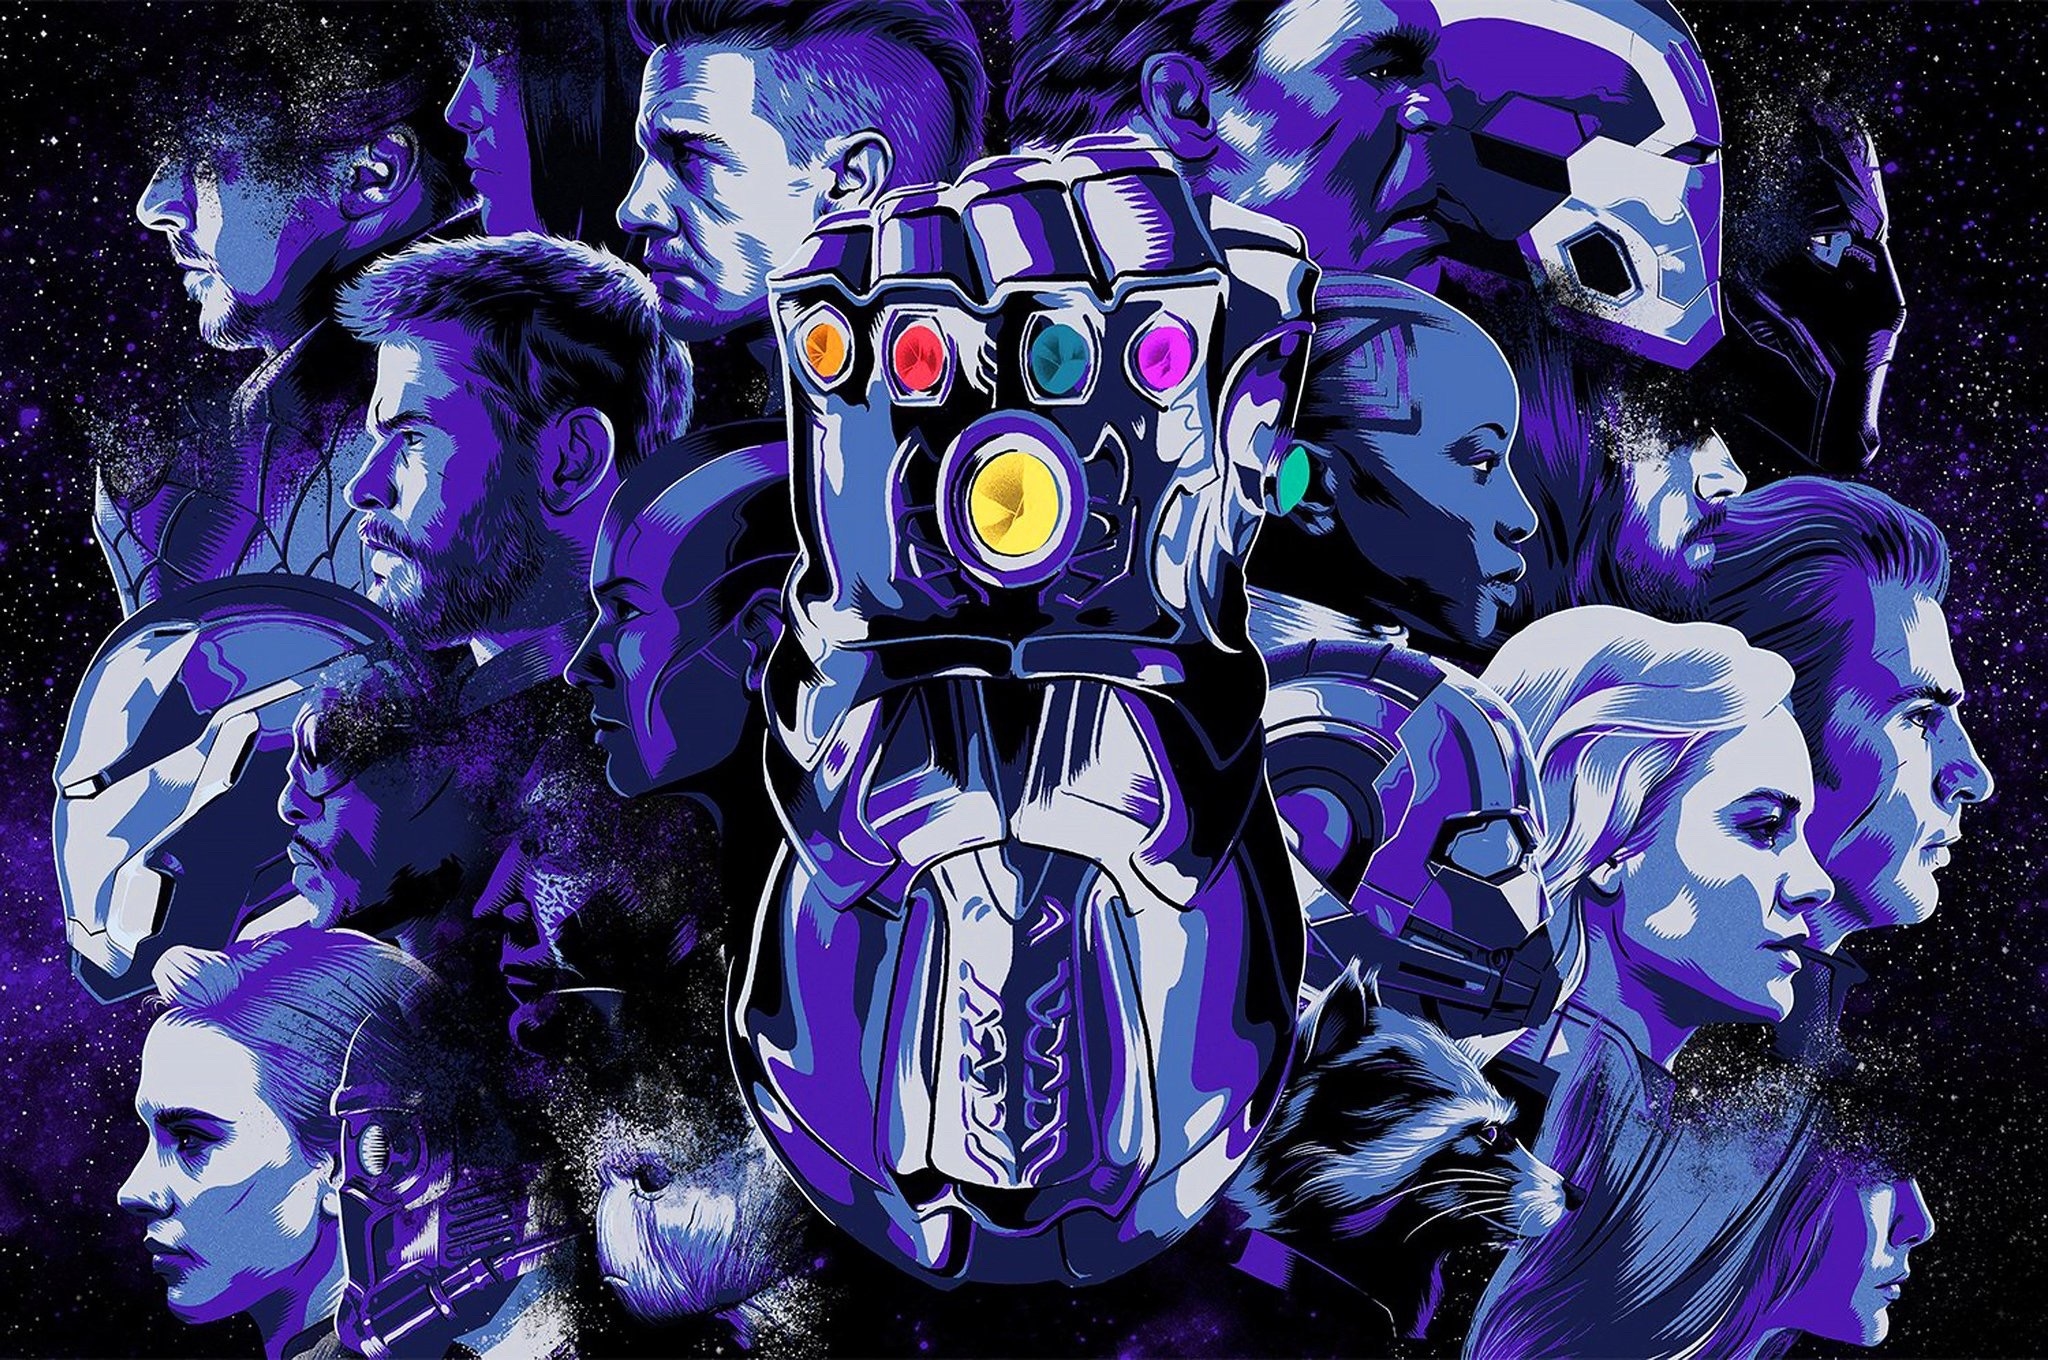  Avengers  Endgame  Cover Art Wallpaper  HD  Movies 4K 